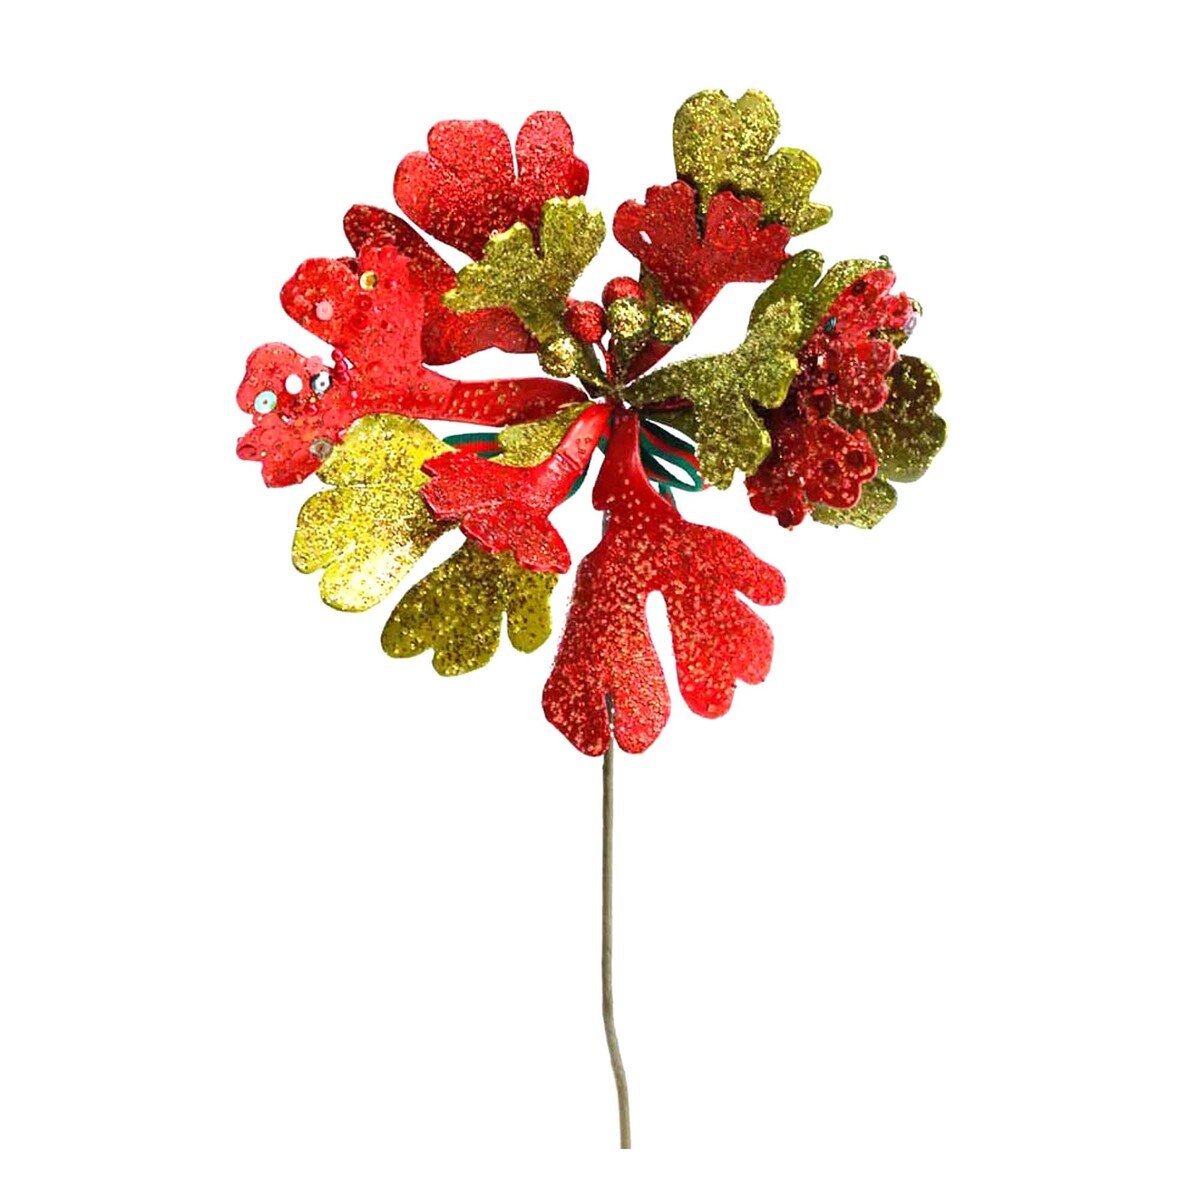 بارتي فيوجن زهرة زينة الكريسماس 20 سم 90653-11 متنوعة